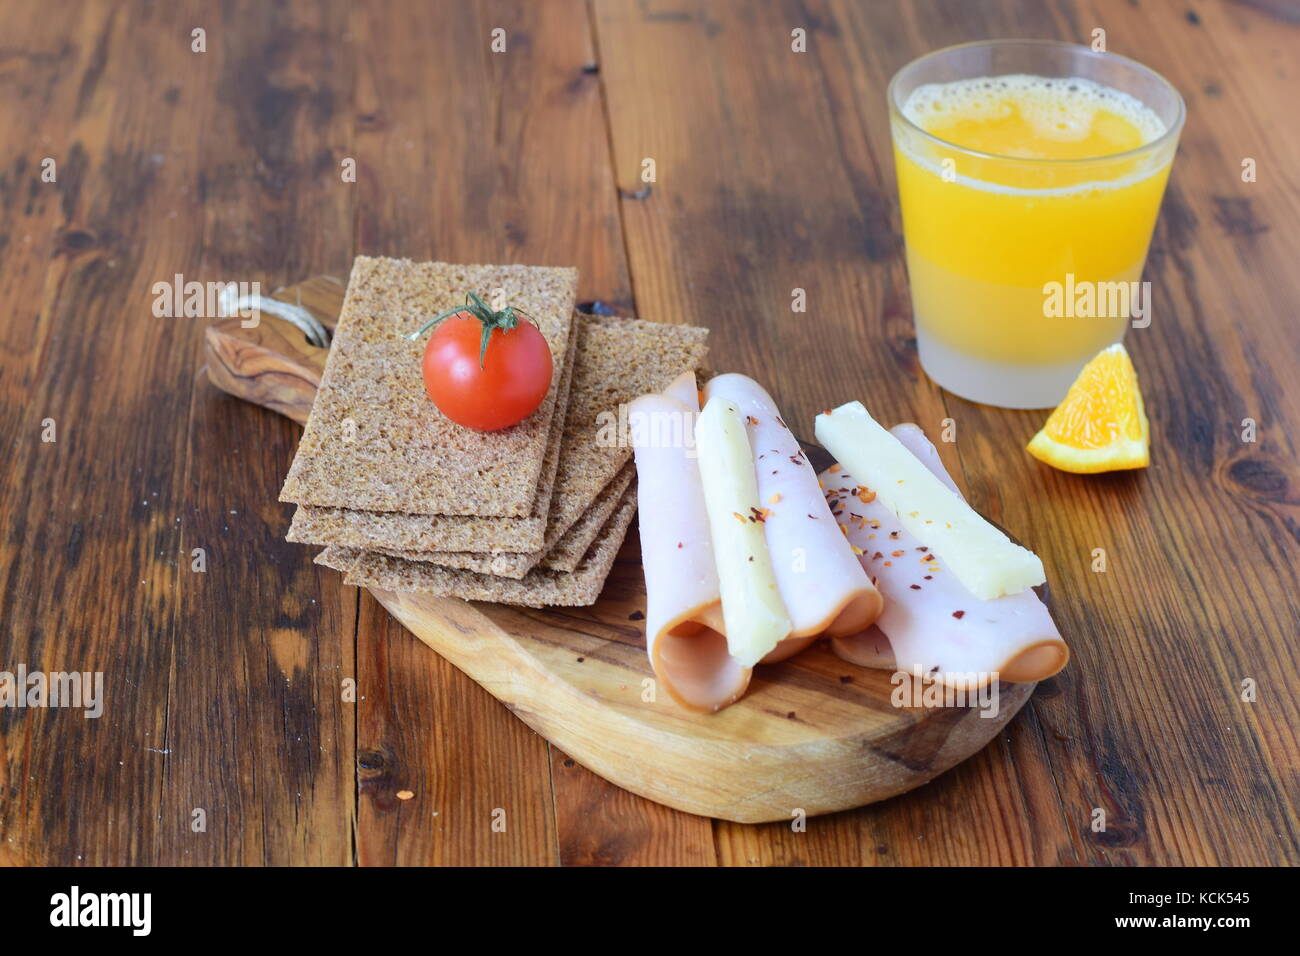 Holz Schneidebrett mit Knäckebrot, Käse, Schinken, Cherry Tomaten, ein Glas frisch gepressten Orangensaft auf einem hölzernen Hintergrund. gesundes Frühstück gesundes eatin Stockfoto